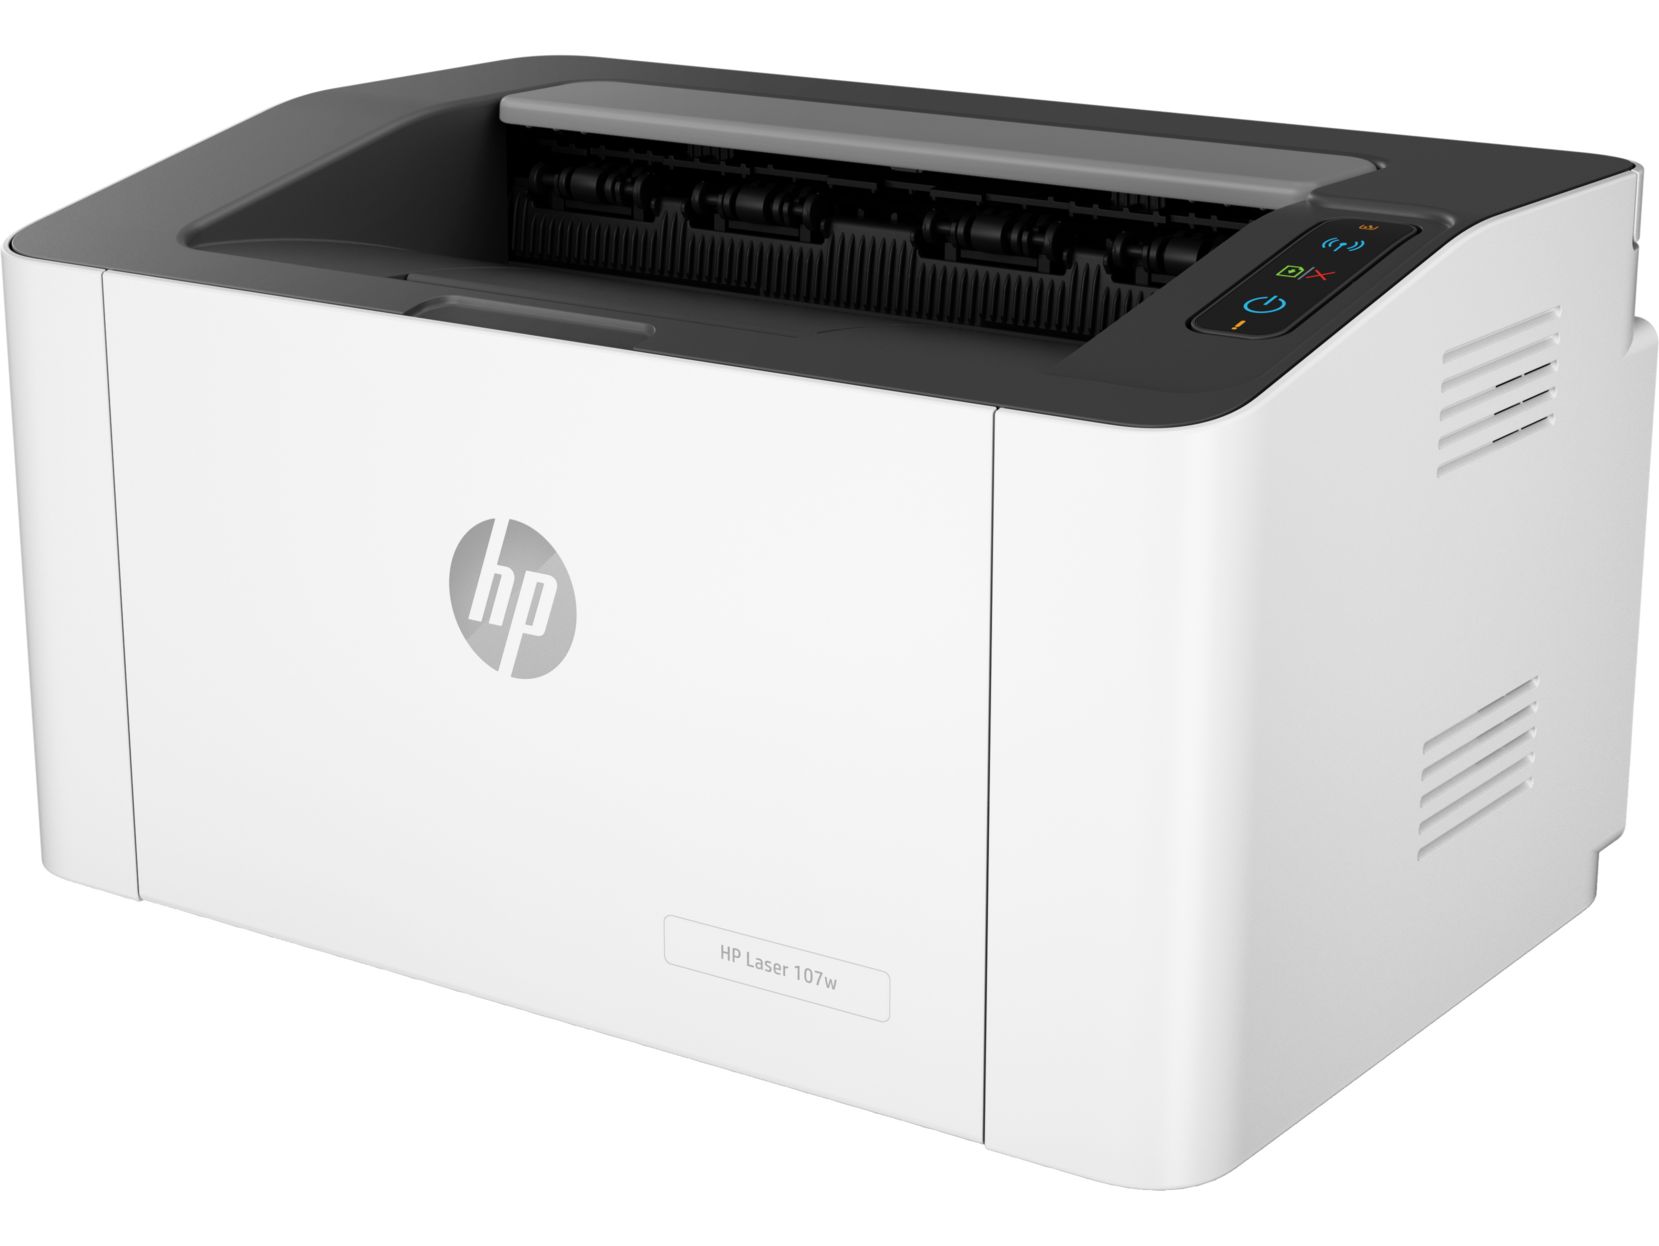 Принтер HP Laser 107w принтер hp laser m107w 4zb78a 193015506459